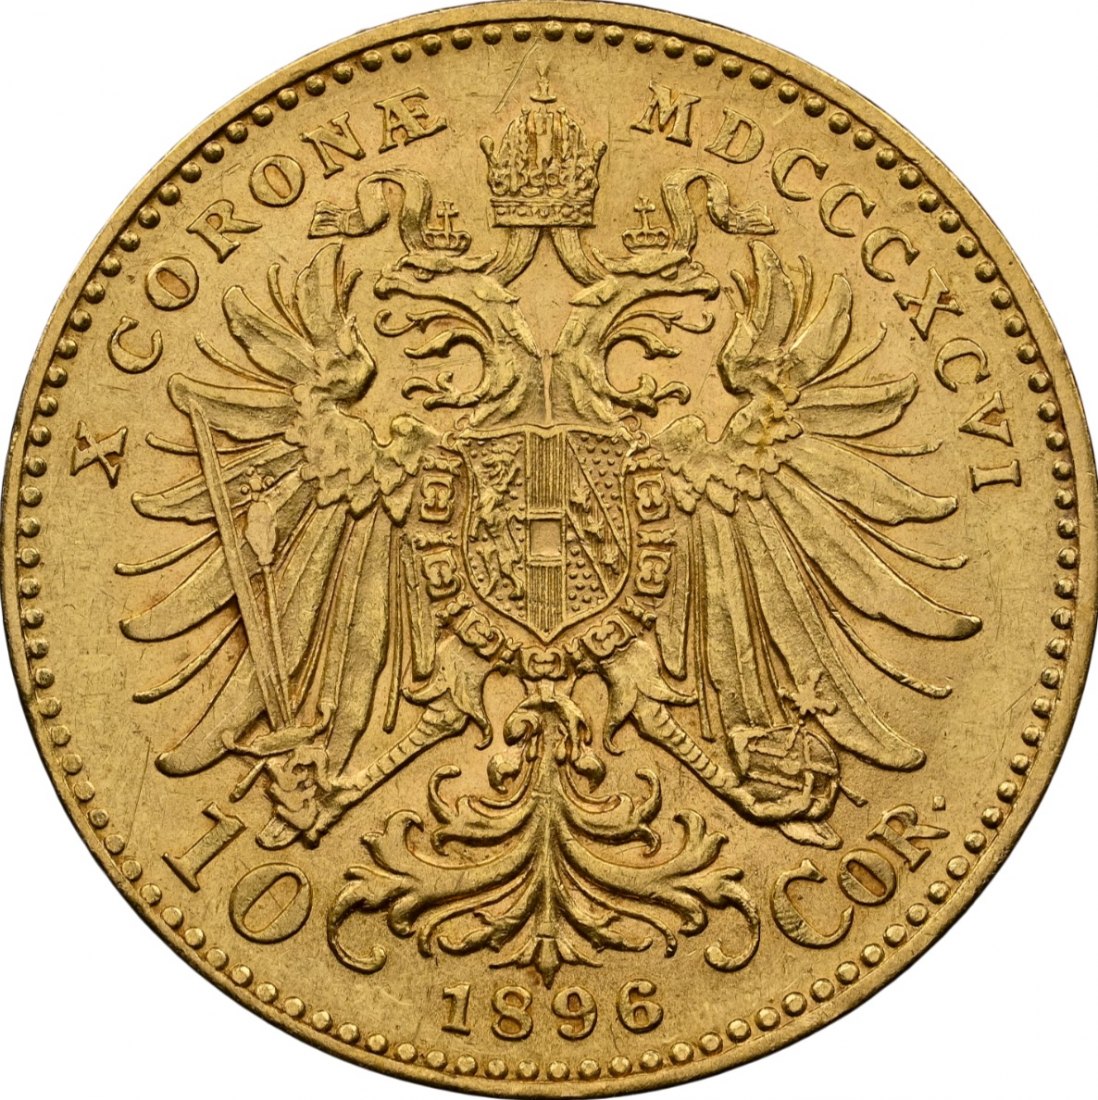  Österreich 10 Goldkronen 1896 | NGC AU55 | Franz Joseph I.   